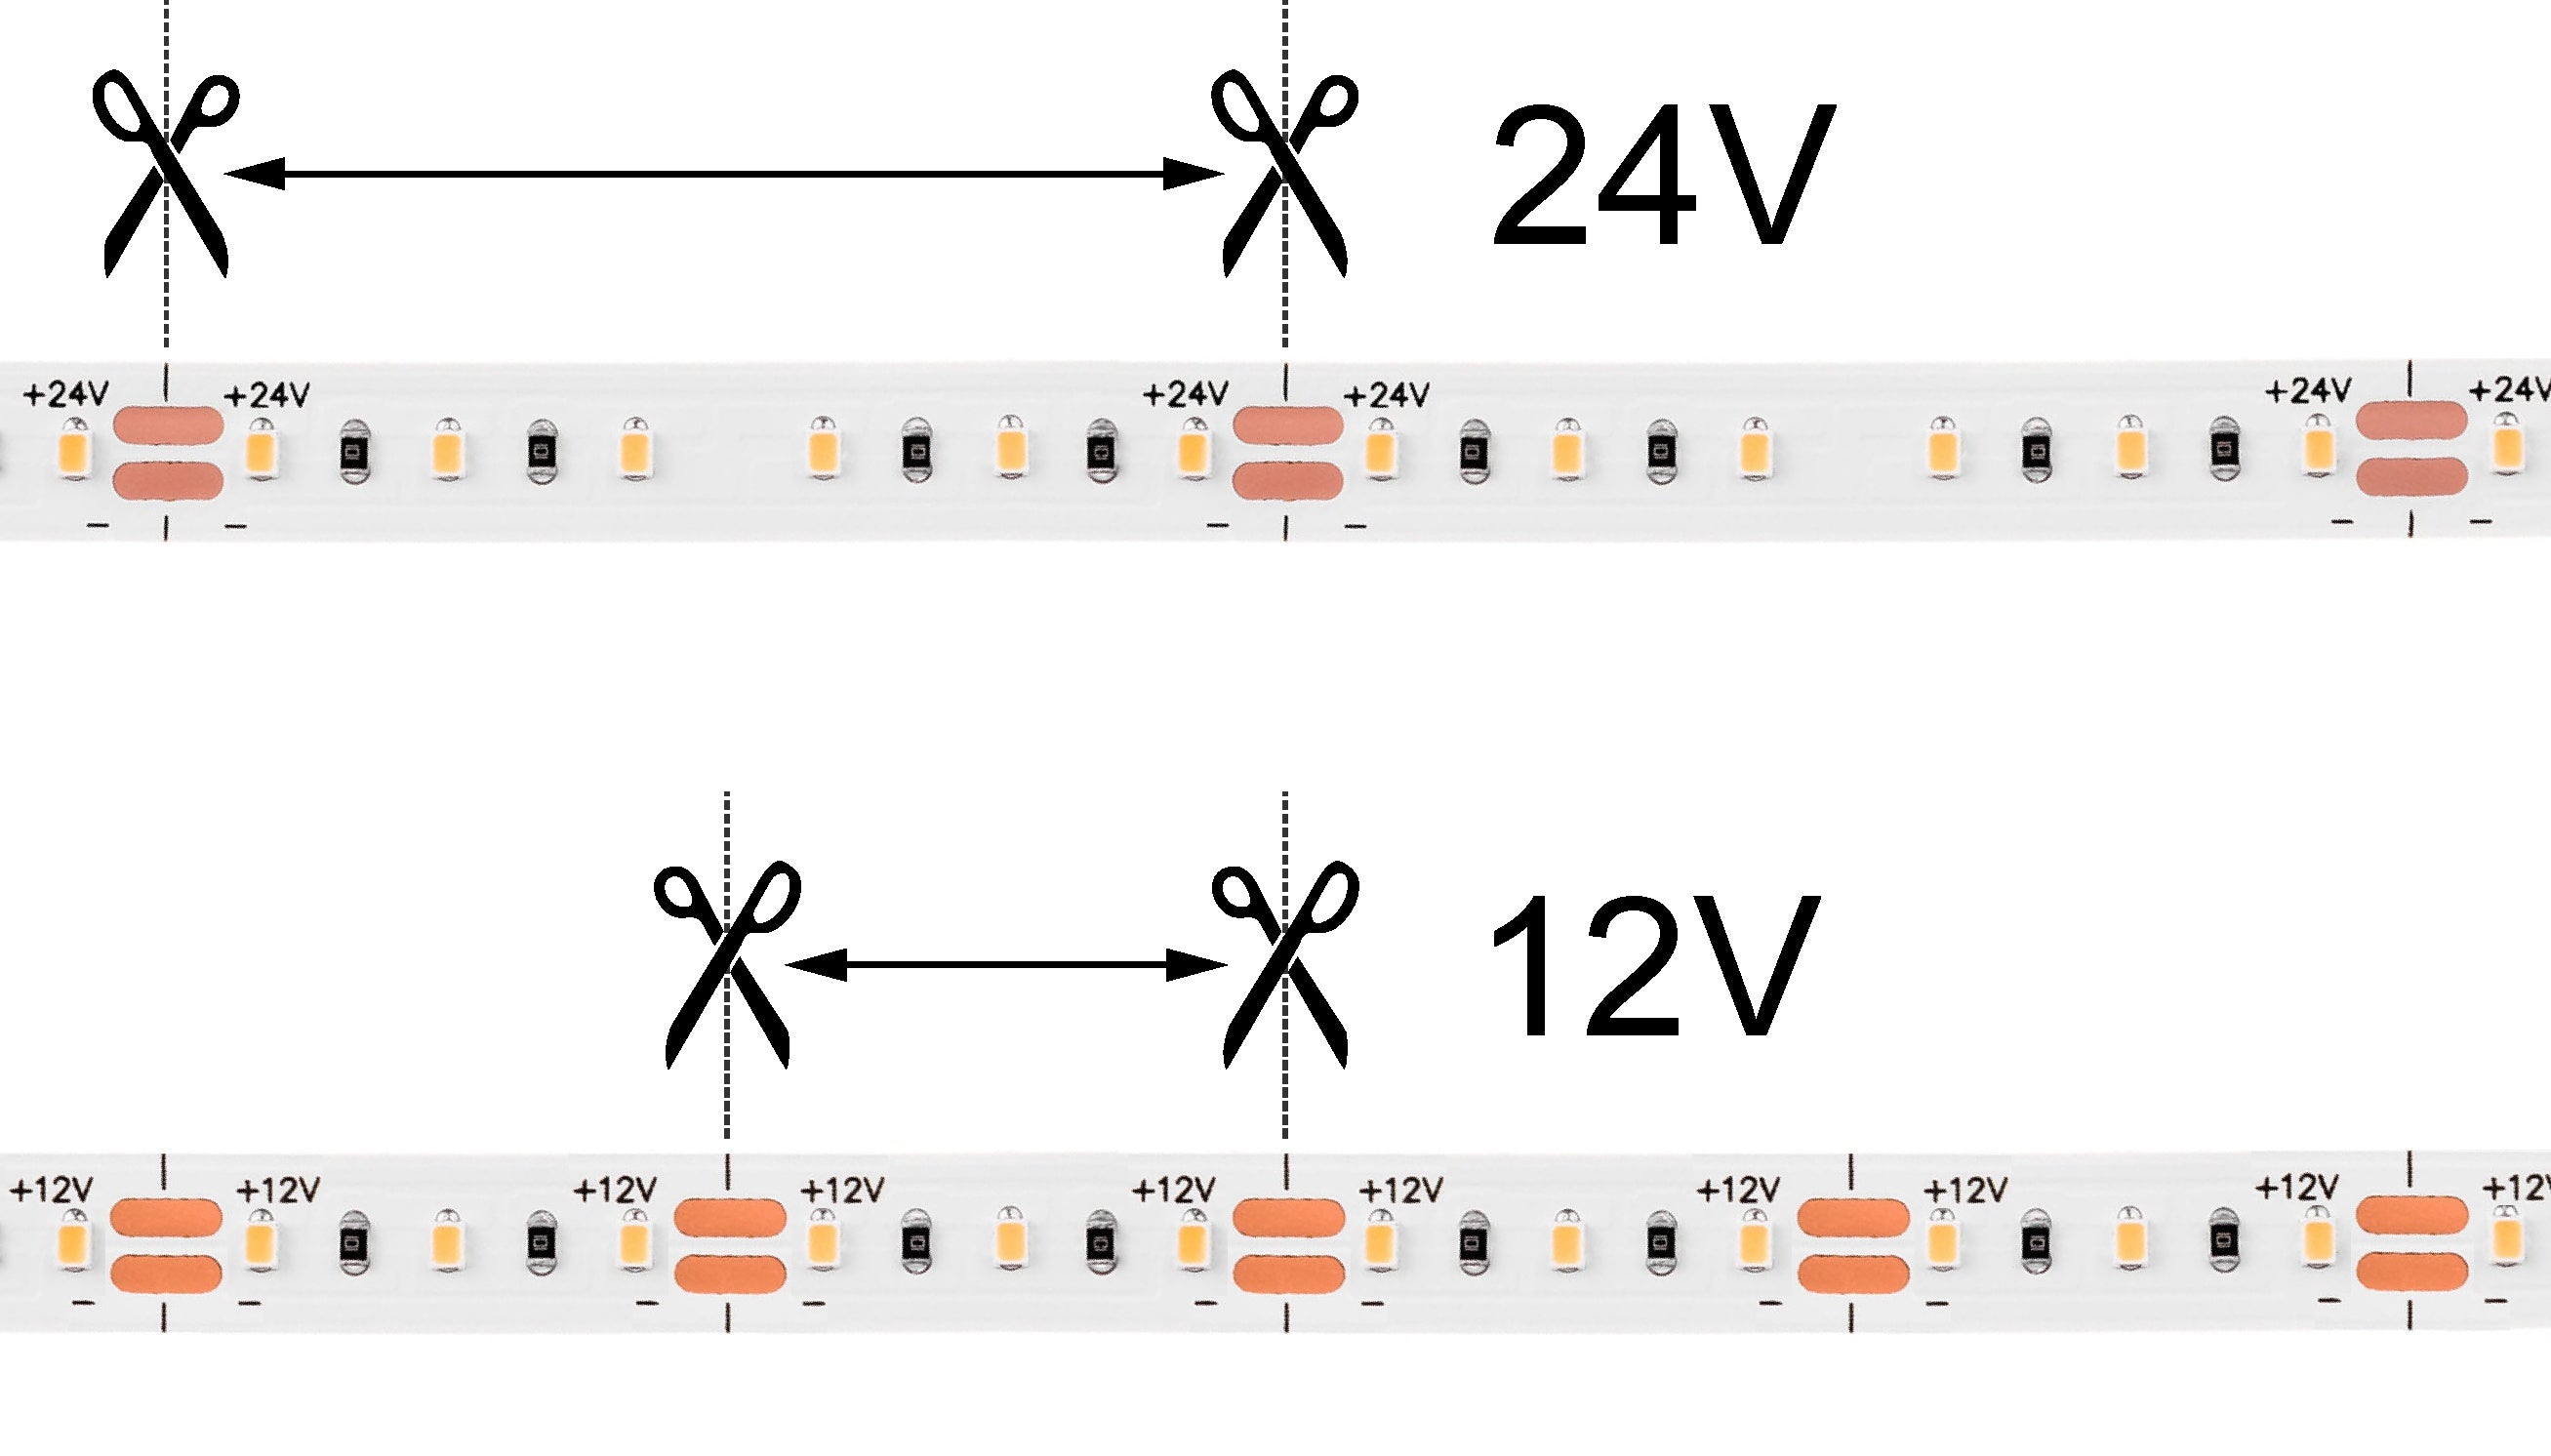 Which is better 12V or 24V LED lights?